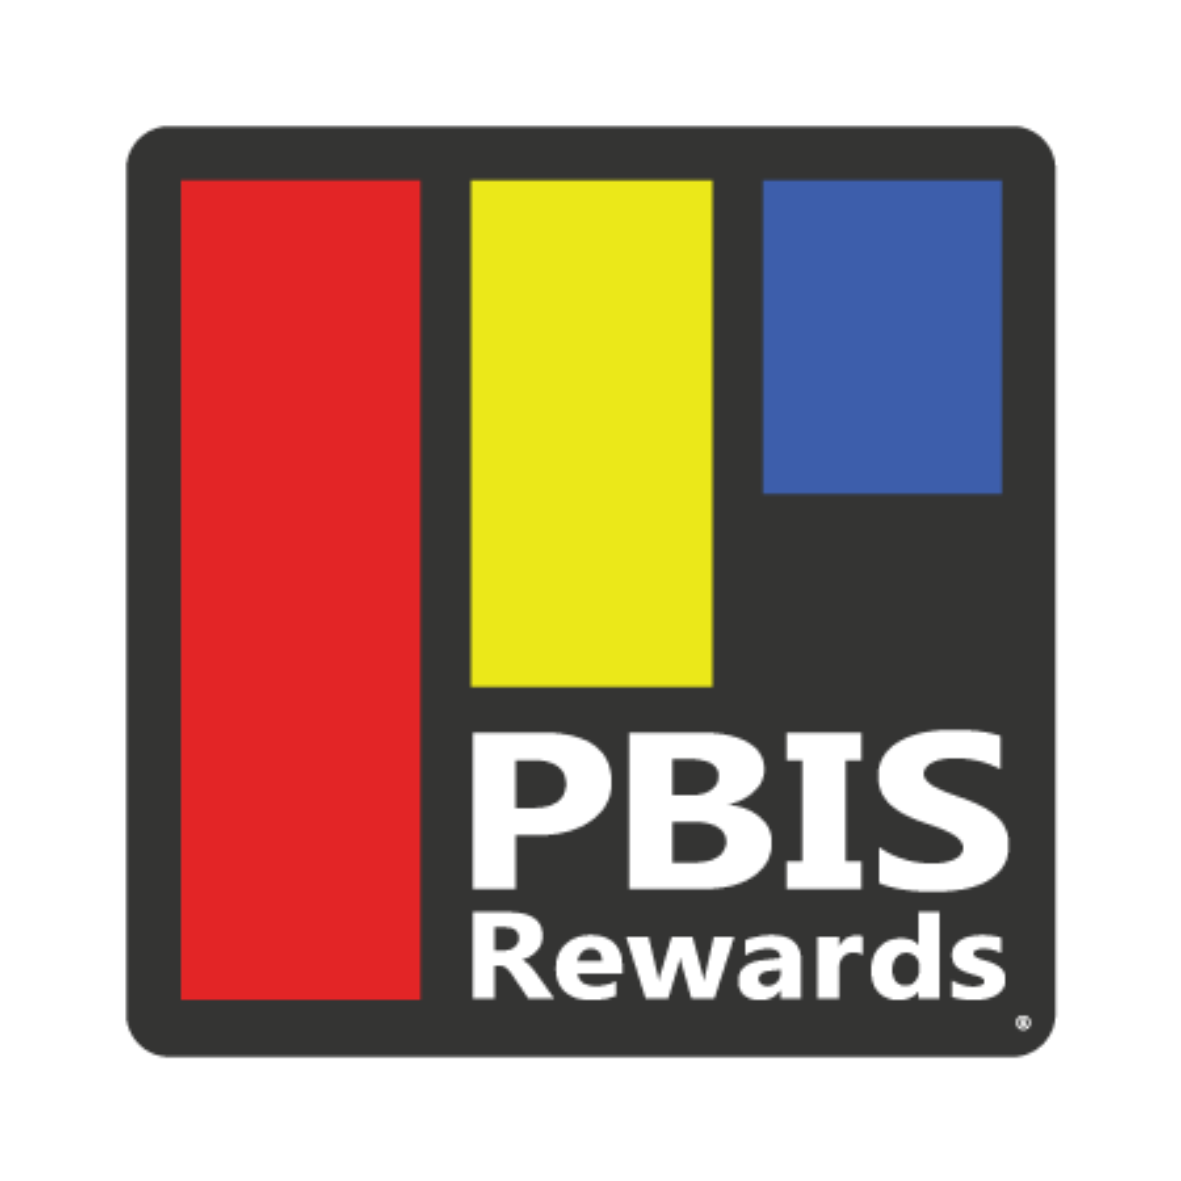 PBIS Rewards Getting Started